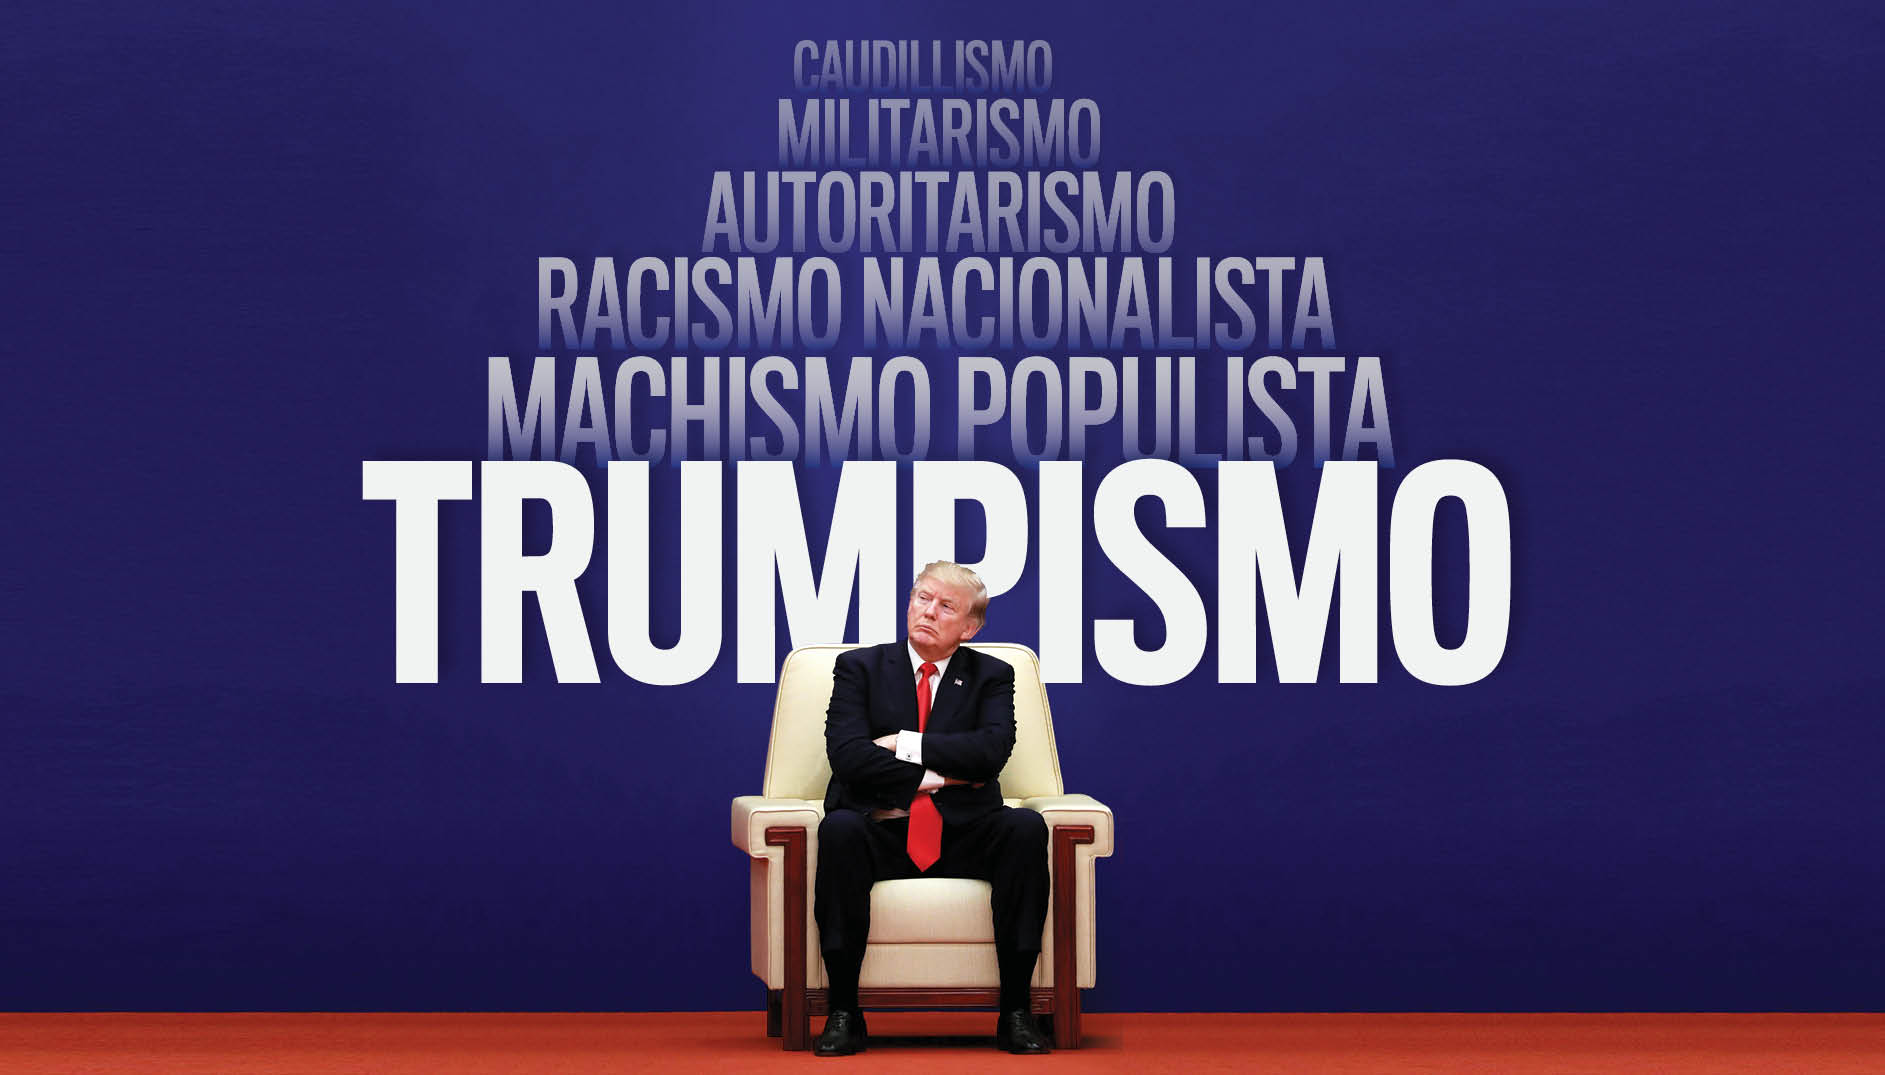 Trumpismo, antes y después de Trump Por Dalia González Delgado | Cubadebate